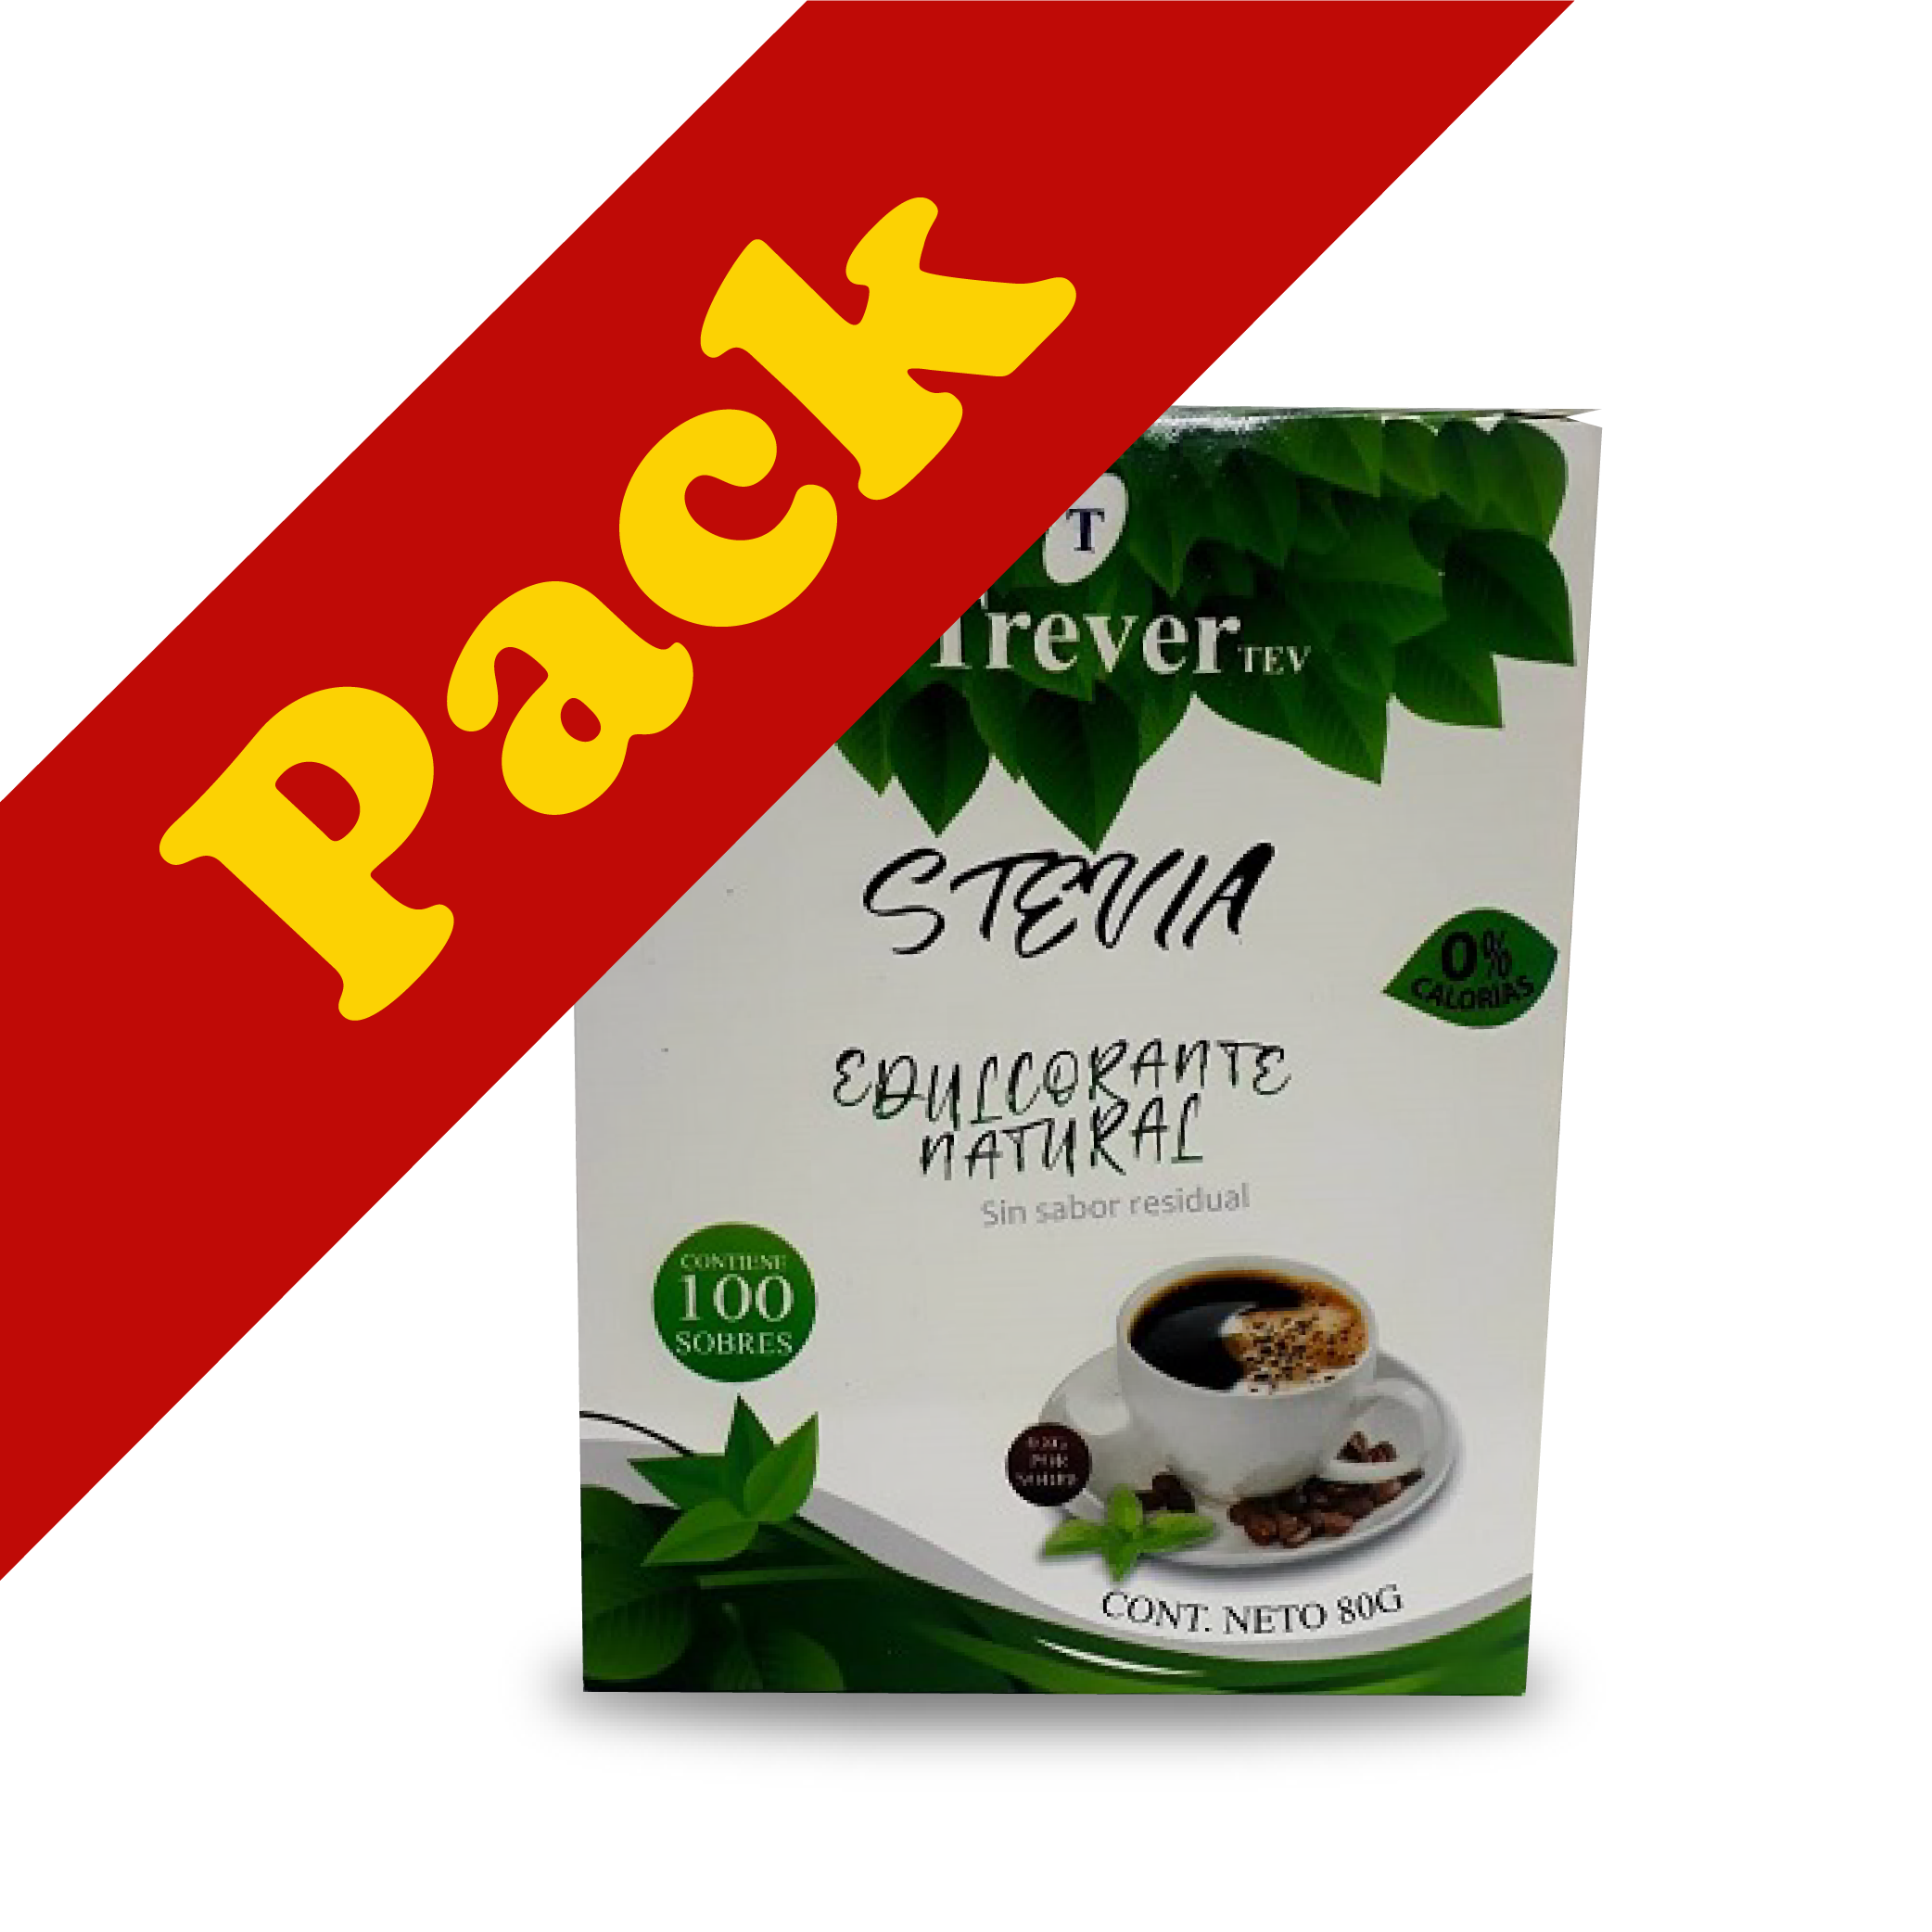 Trever Stevia en Polvo PACK 6 x 100 sobres